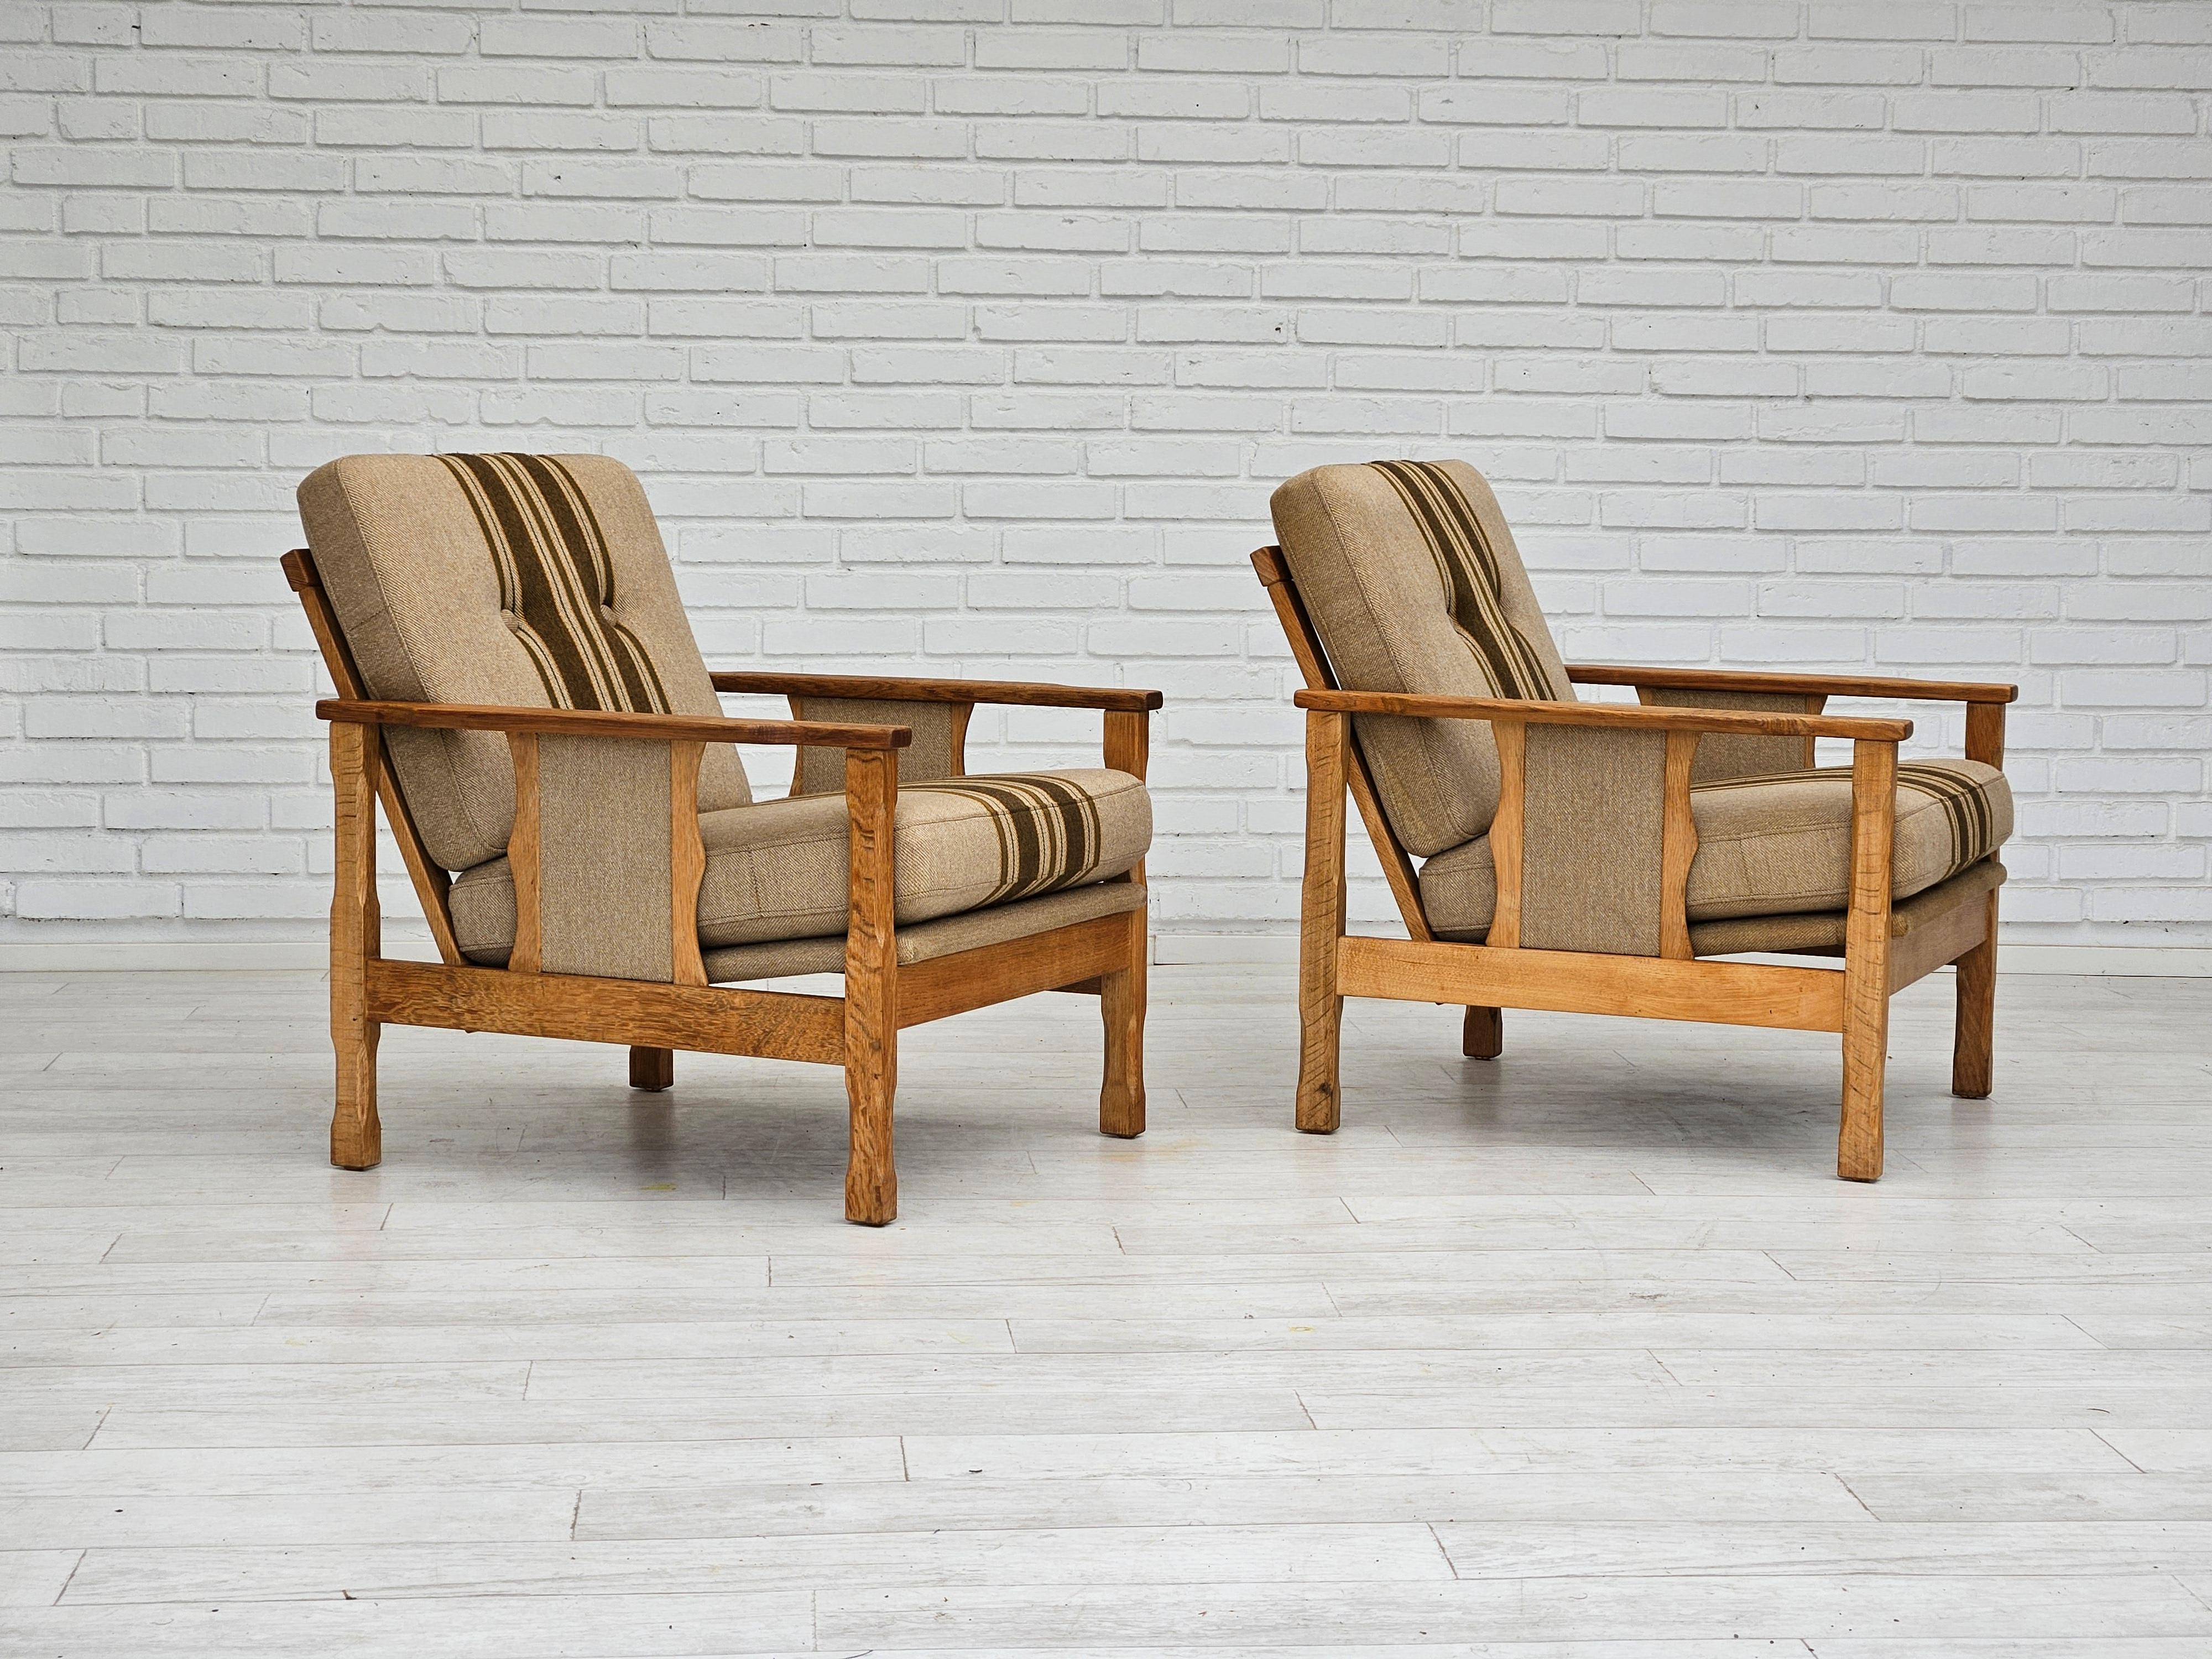 1970er Jahre, Paar dänische Sessel in sehr gutem Originalzustand: keine Gerüche und keine Flecken. Möbel Wollstoff, Eichenholz. Abnehmbare Kissen. Hergestellt von einem dänischen Möbelhersteller etwa in den 1970er Jahren. ( Preis für zwei Stühle )